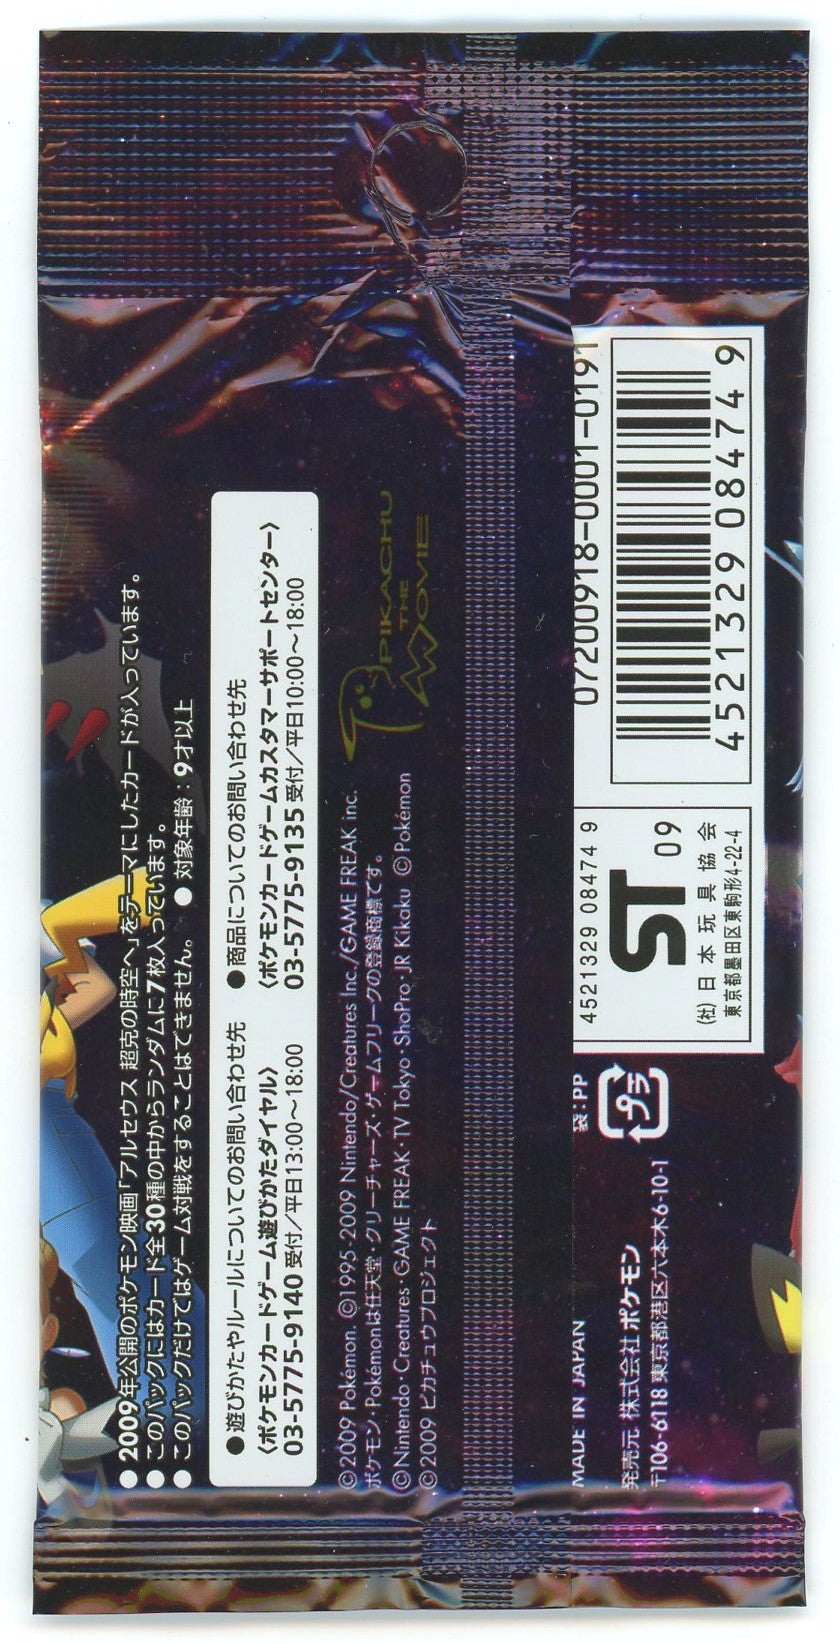 Japanese Pokémon - Advent of Arceus / Jewel of Life 2009 Movie Commemo –  Pokemon Plug